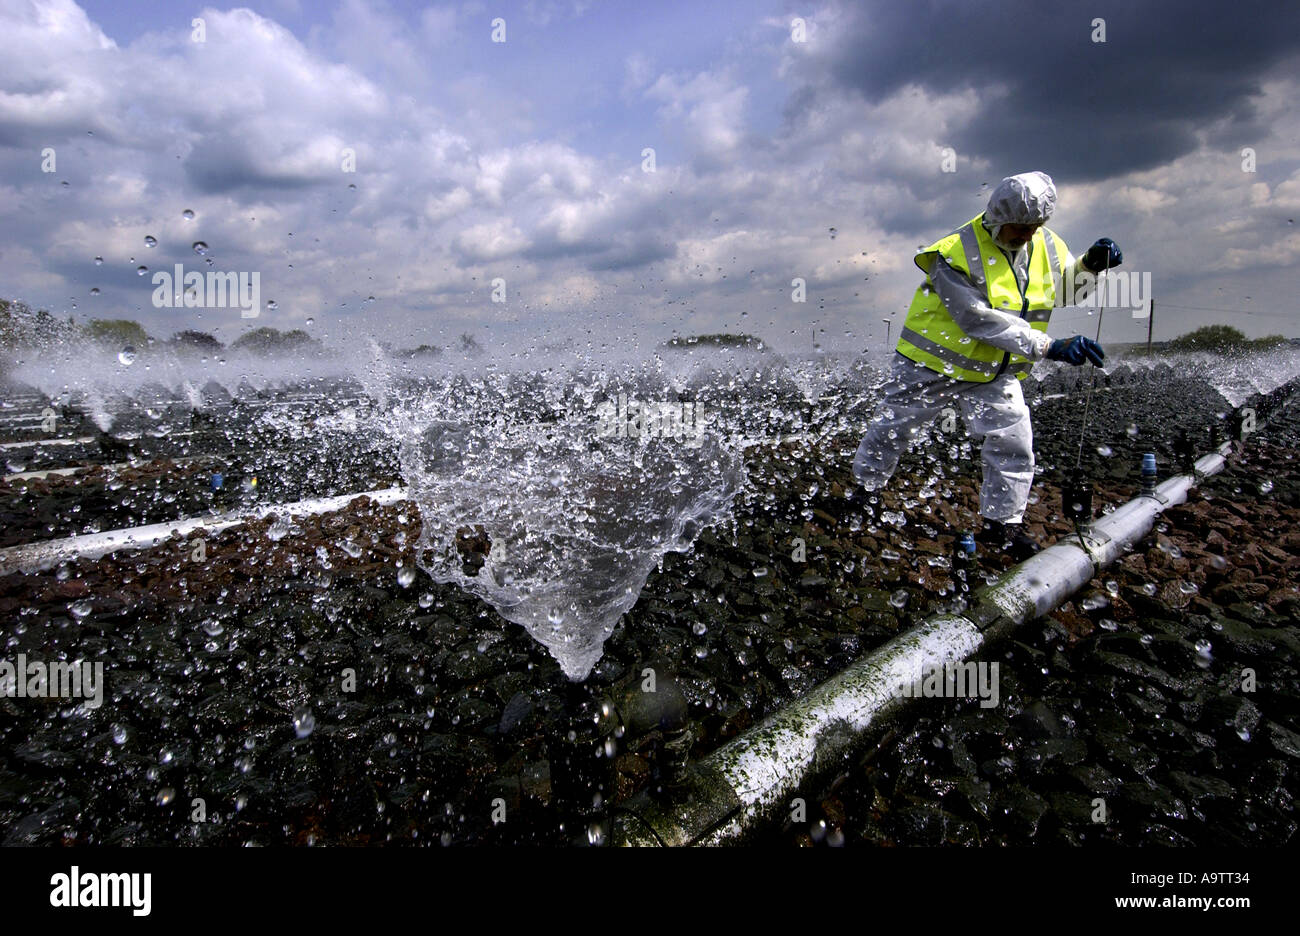 Ein Abwasser-Behandlung-Operator führt wesentliche Reinigung und Wartung Arbeit am Wanlip in Leicester Kläranlagen Stockfoto